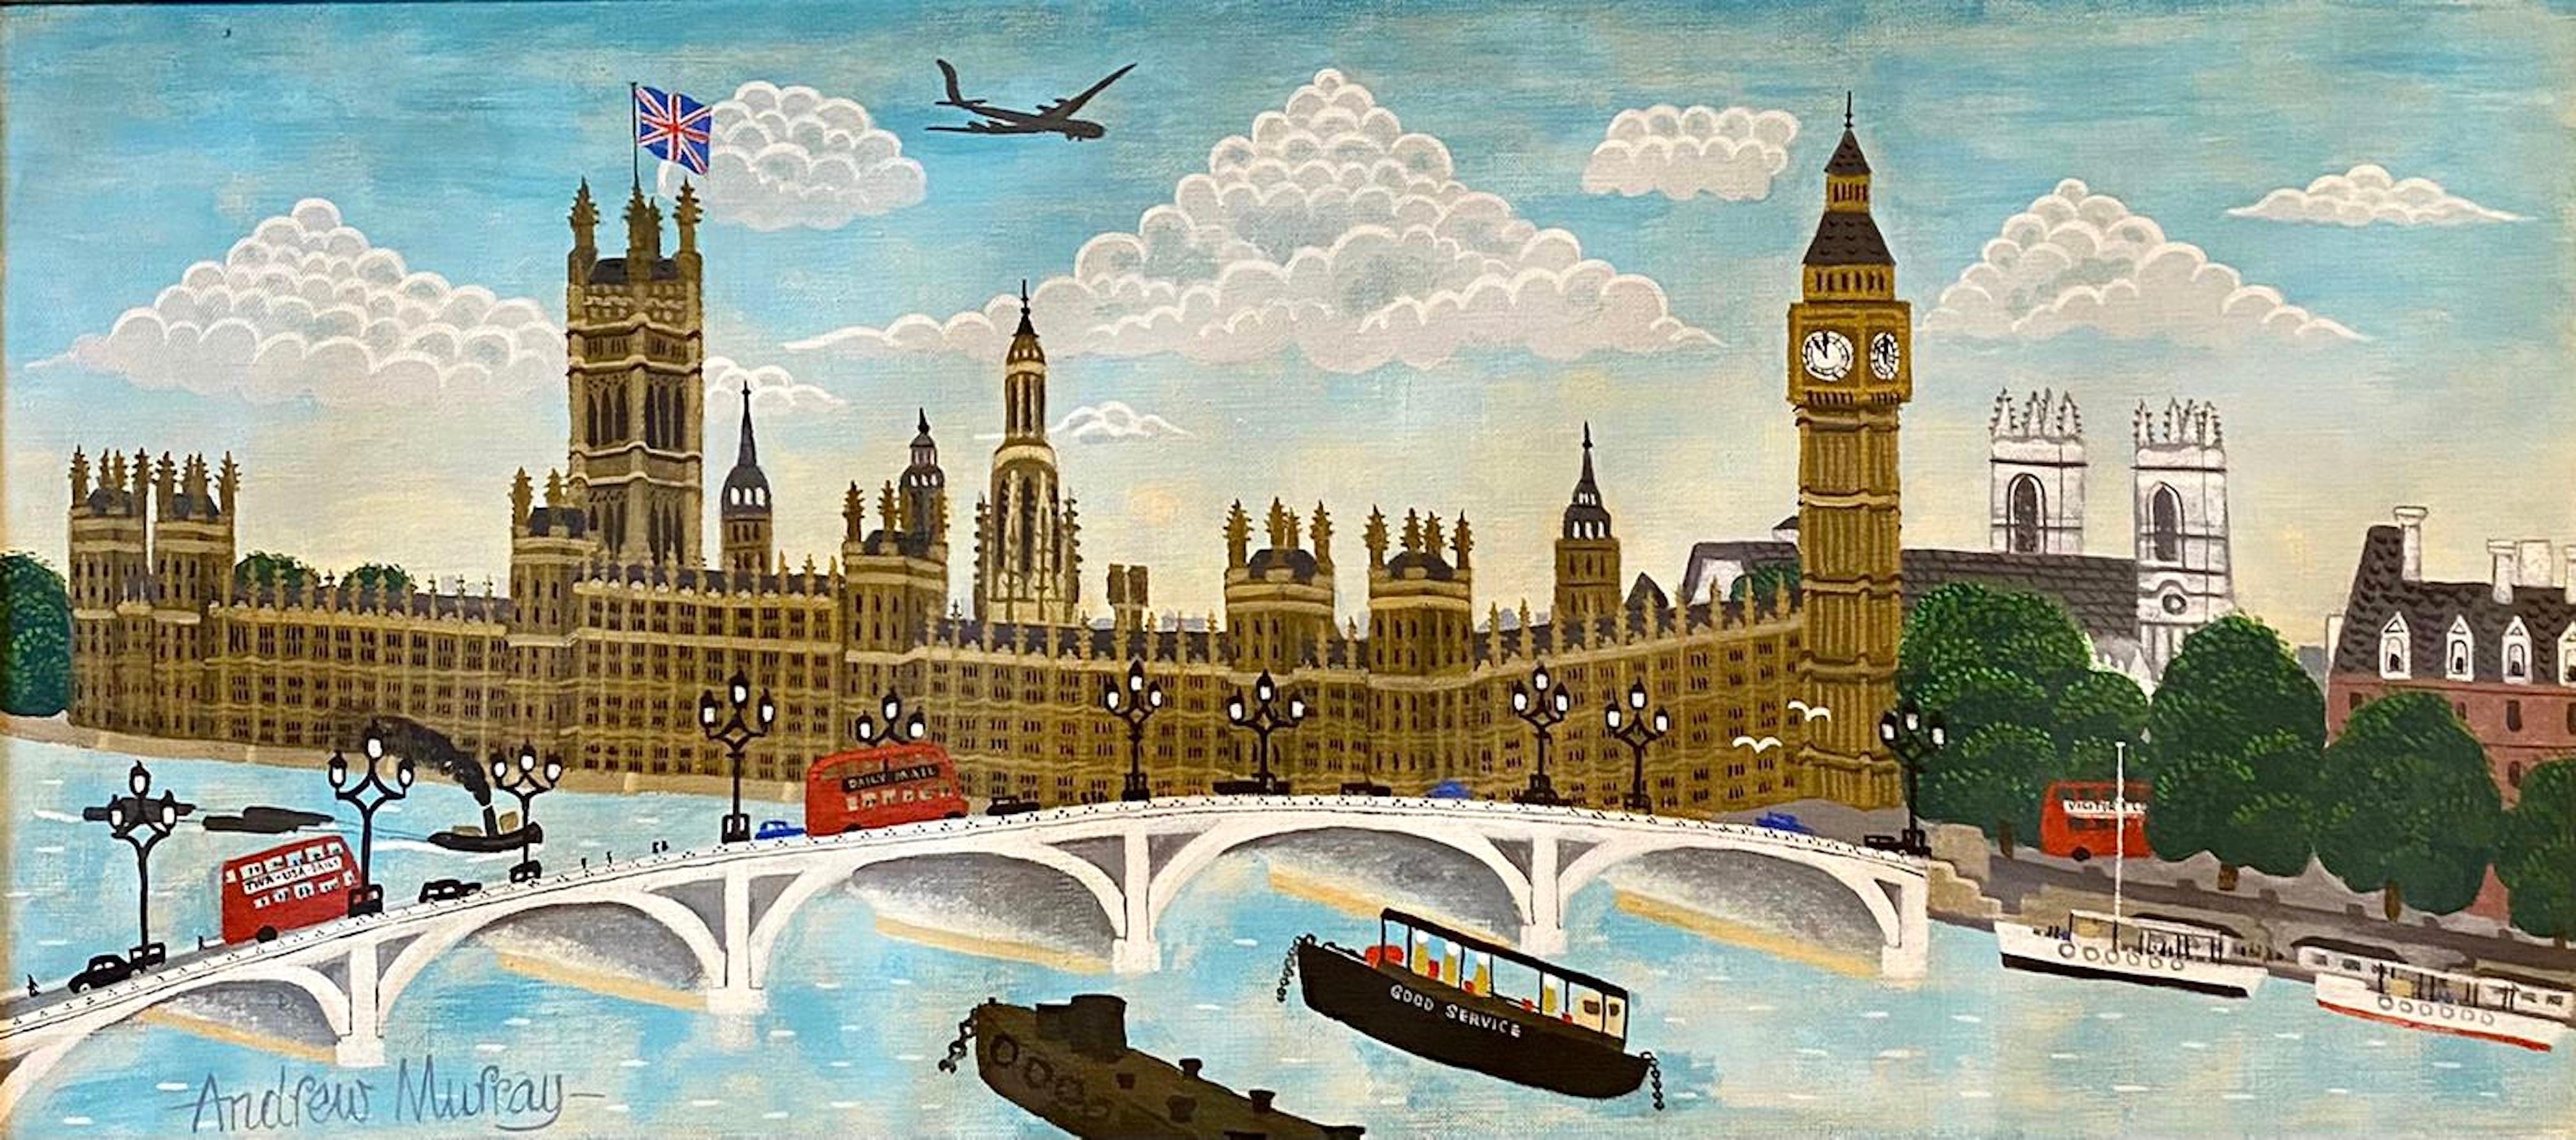 Peinture à l'huile artisanale - Scène naïve de rue de Londres - Big Ben, Parlement, Union Jack 